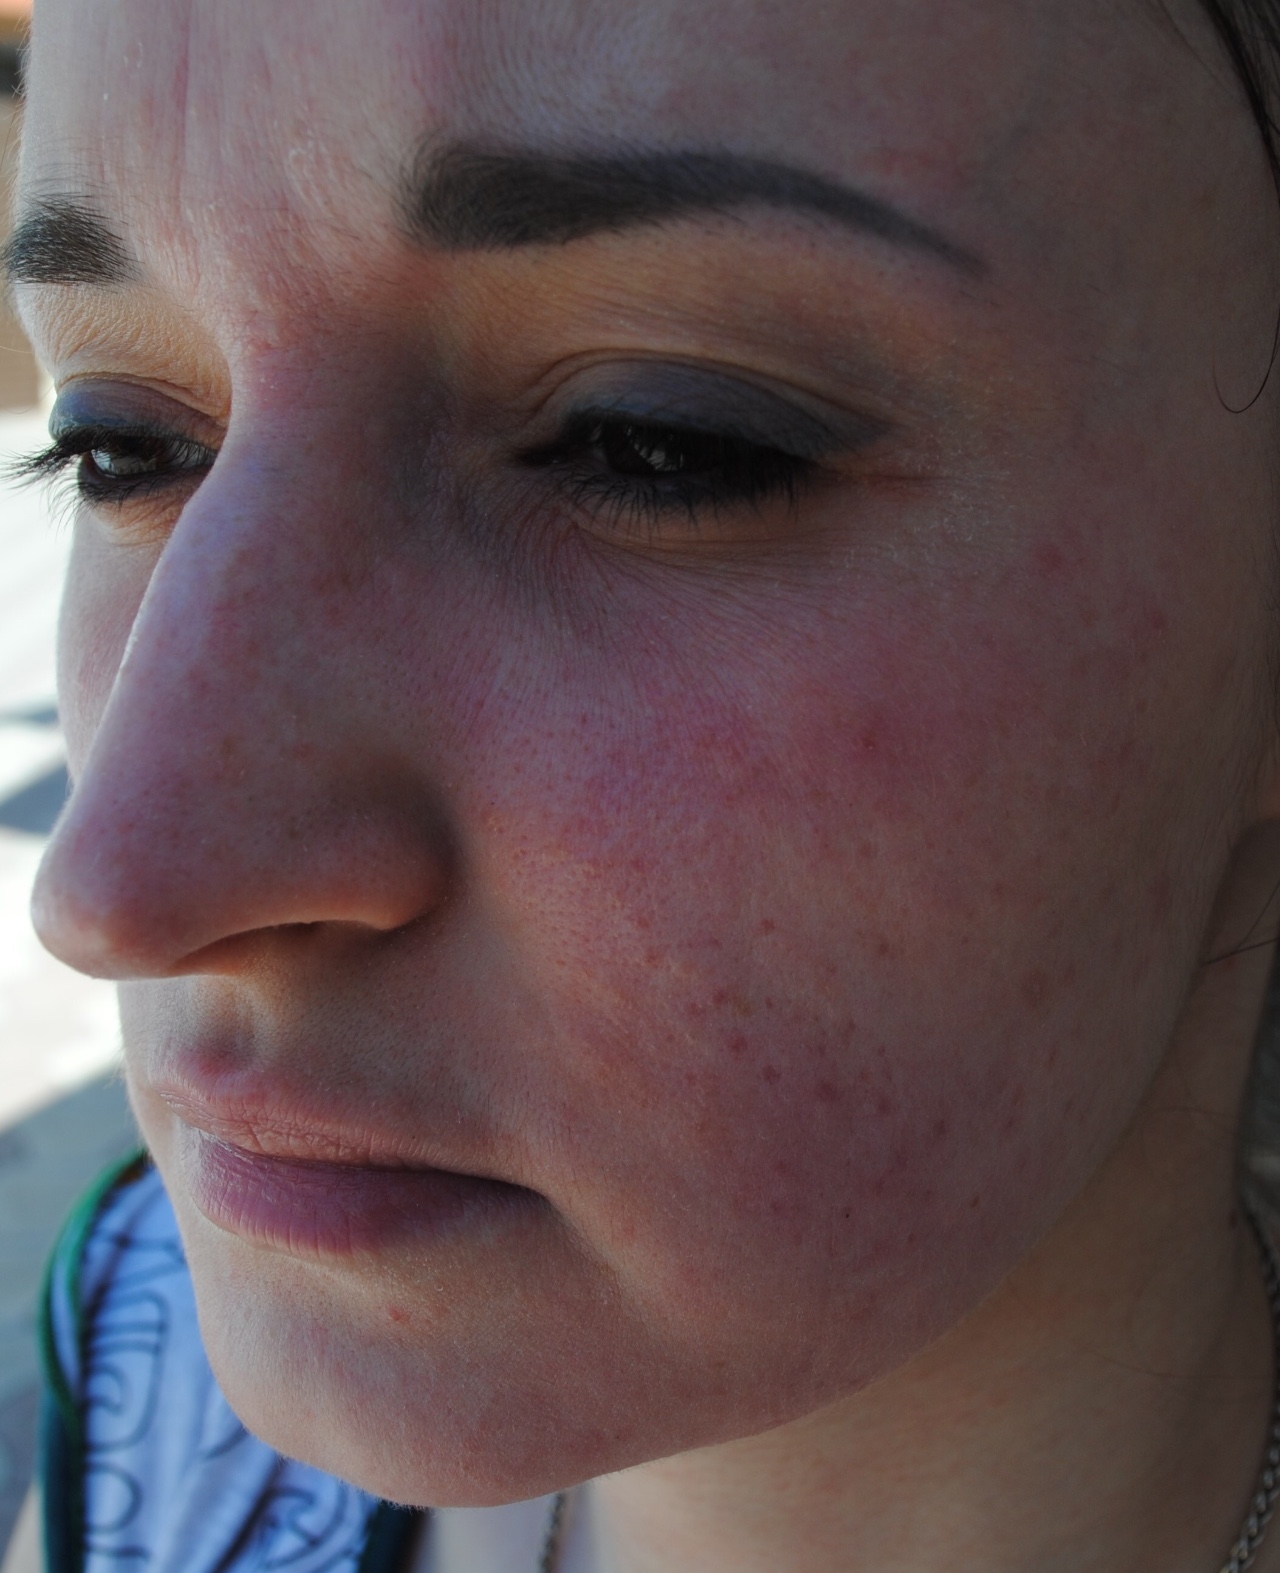 Сыпь на лице в течении 2-х лет, похожая на экзему - Вопрос дерматологу .